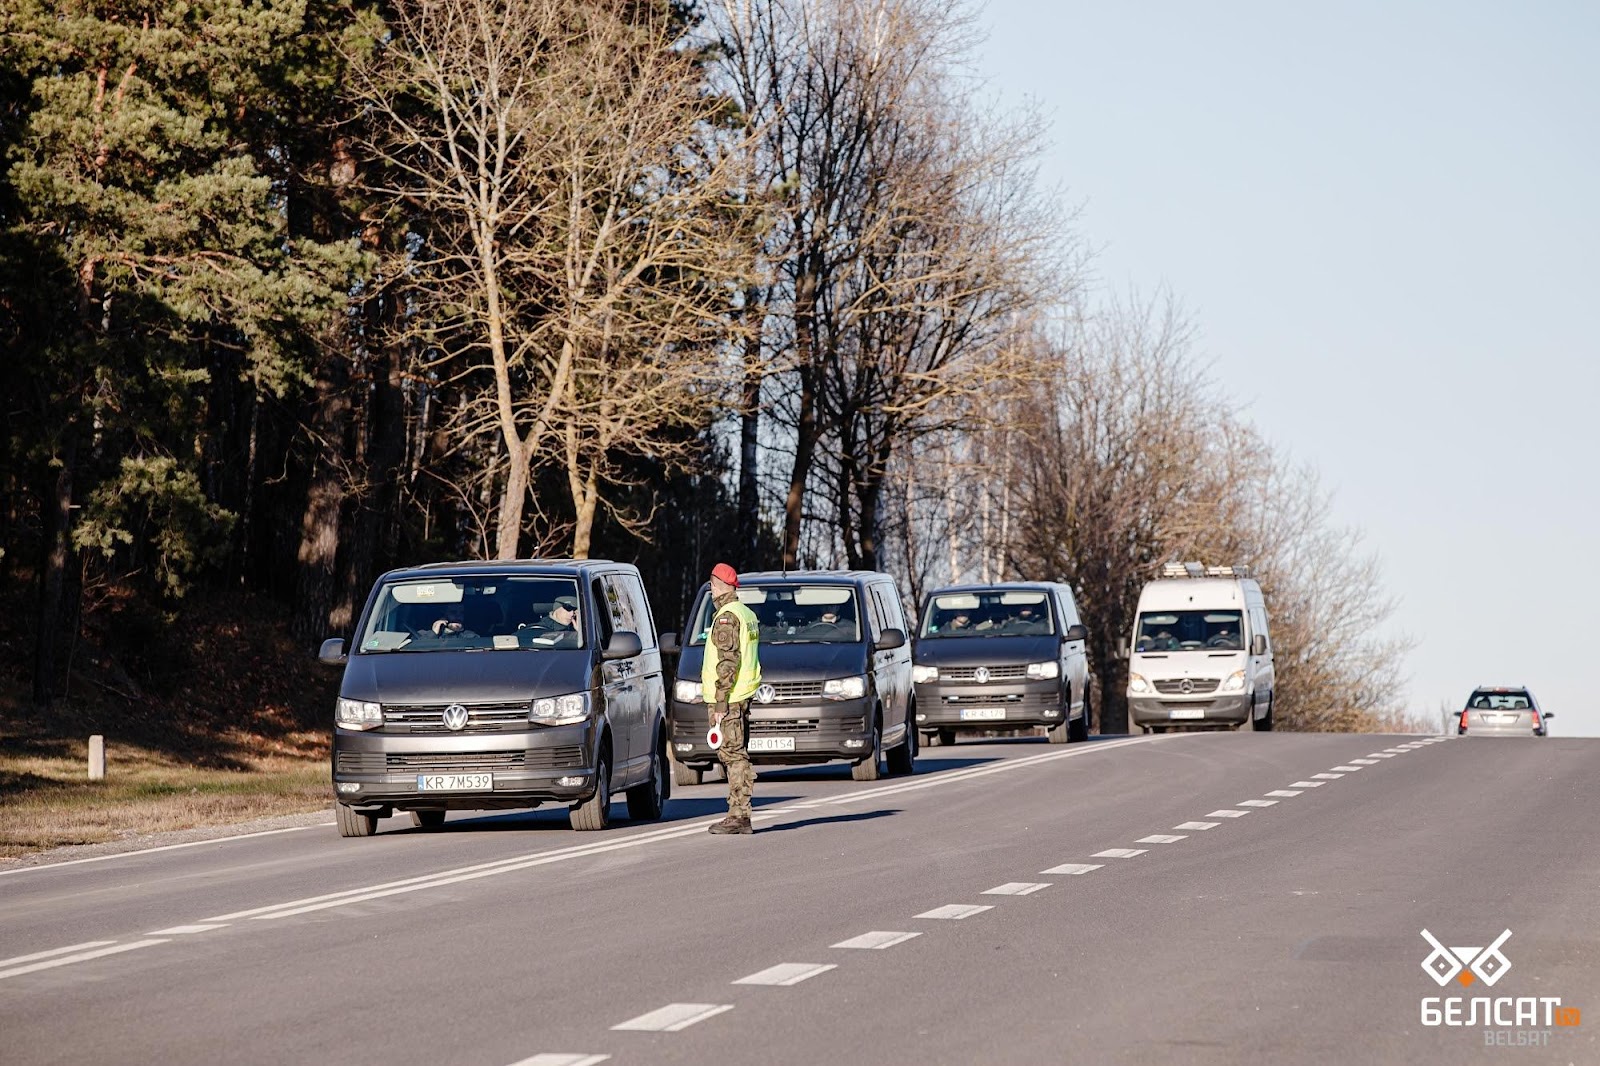 Пункт проверки автомобилей, которые едут в сторону белорусской границы, во время чрезвычайного положения из-за наплыва мигрантов